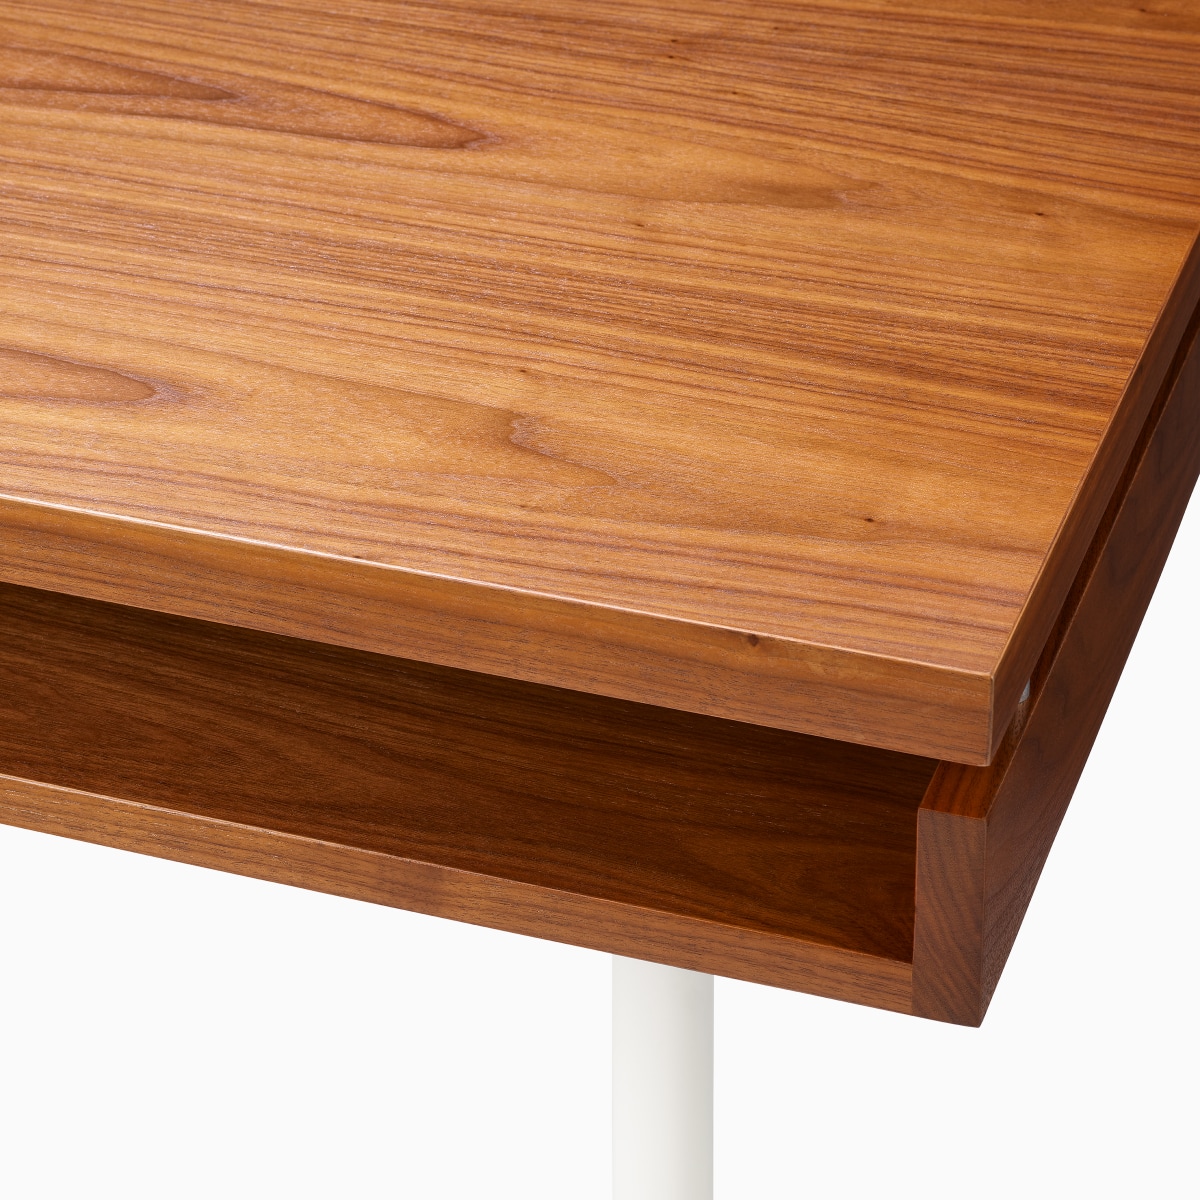 细节图：胡桃木材质的Eames 2500系列老板桌上的第二层储物架